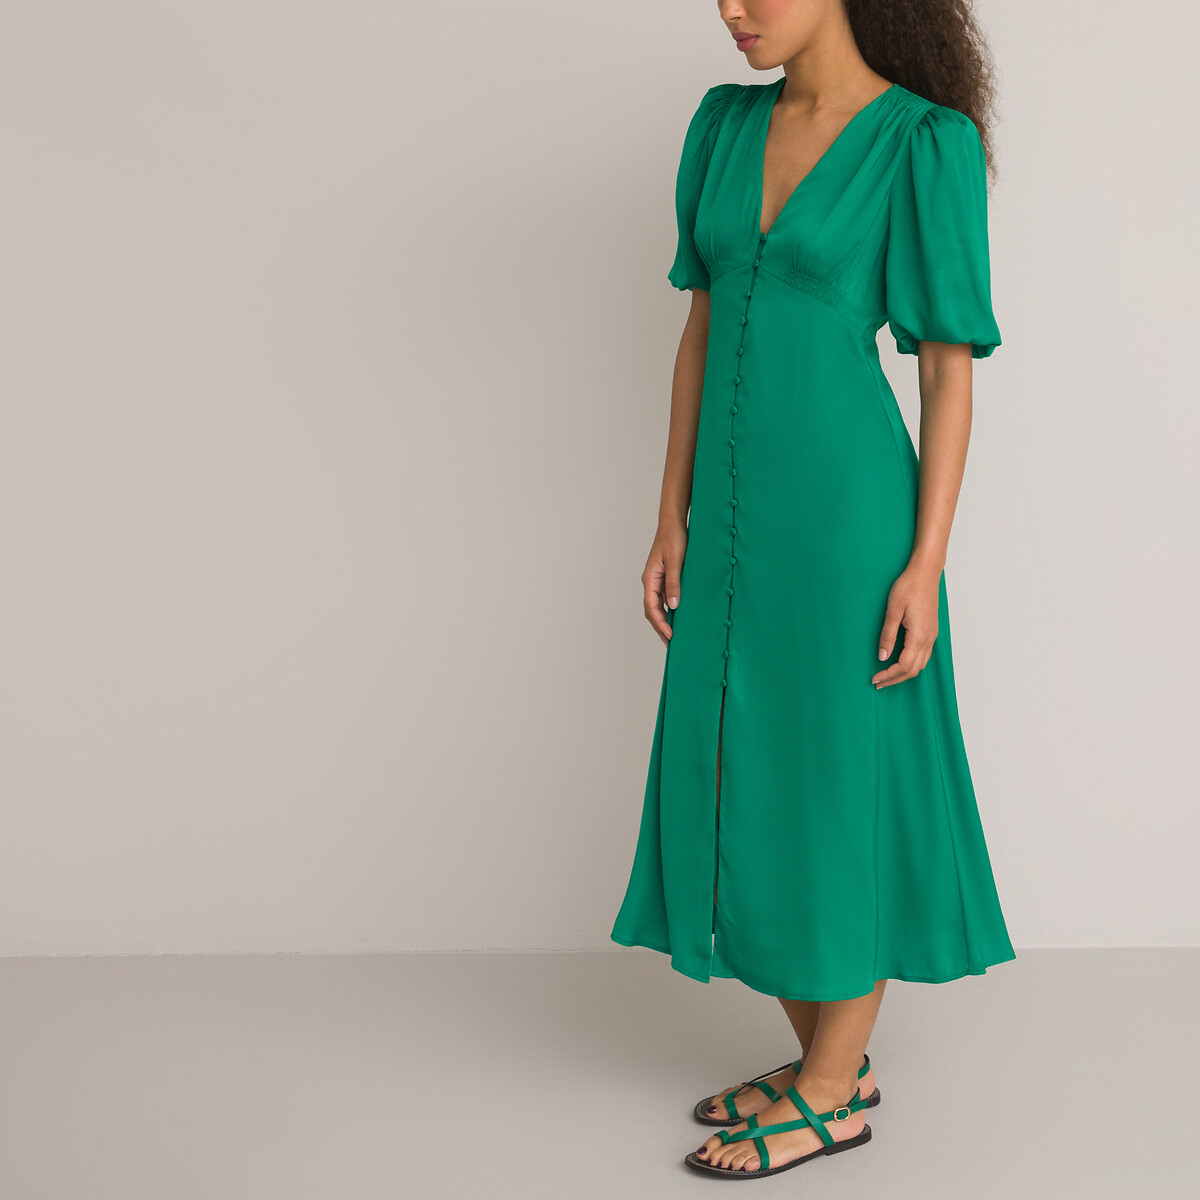 Платье длинное расклешенное короткие рукава с напуском 42 зеленый платье длинное рукава с напуском с принтом 48 красный